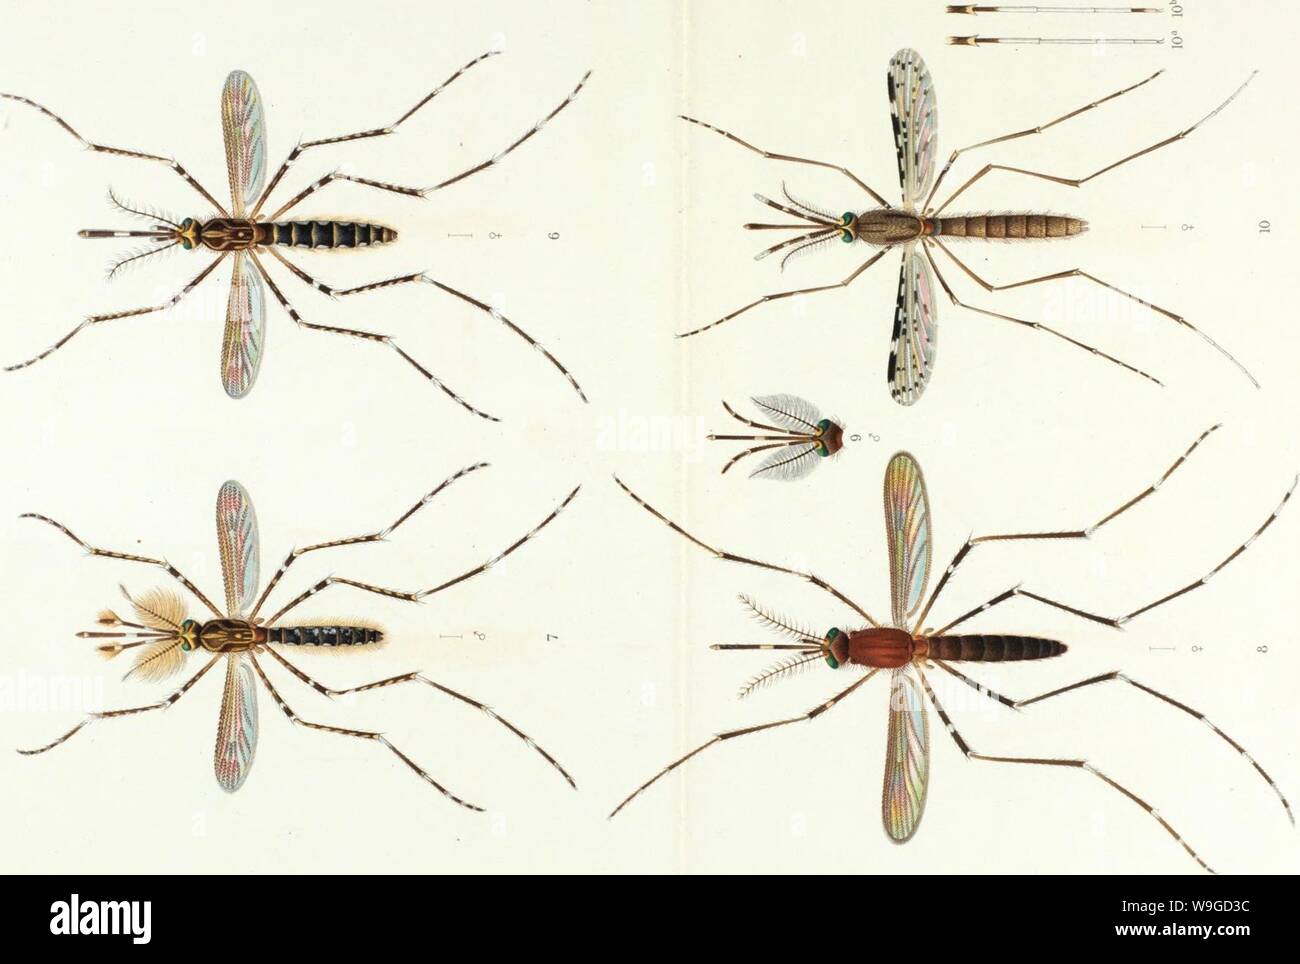 Archive image from page 185 of Os mosquitos no Pará Reunião. Os mosquitos no ParaÌ. ReuniaÌo de quatro trabalhos sobre os mosquitos indigenas, principalmente as especies que molestam o homen  CUbiodiversity1124668 Year: 1905 ( u 0 o CO Â£ '5 cr to o CO &lt; .9r u c cu to o    â  o. lo 15 O) ca M tÃµ 'Â« Â« be bC bC &lt; &lt; &lt; ti &lt;u Oi j: J= J= a c. o. bÃ-i bo W) iC iÃº Ã-lI ?::- â ââ¢ Ââ¦â¢'xj Ãµ Ãµ  2  Â«1 (fi t t &gt;&gt;.&gt;&gt;&gt;&gt; JZ JZ JZ  k. u u u 0  o o o 'c c c c 01 at  &lt;u cQ Cd nS cj f- e- E- 6- vO t 00 o bÂ£ bÂ£ Ã) tiÃ iu (L. E E Stock Photo